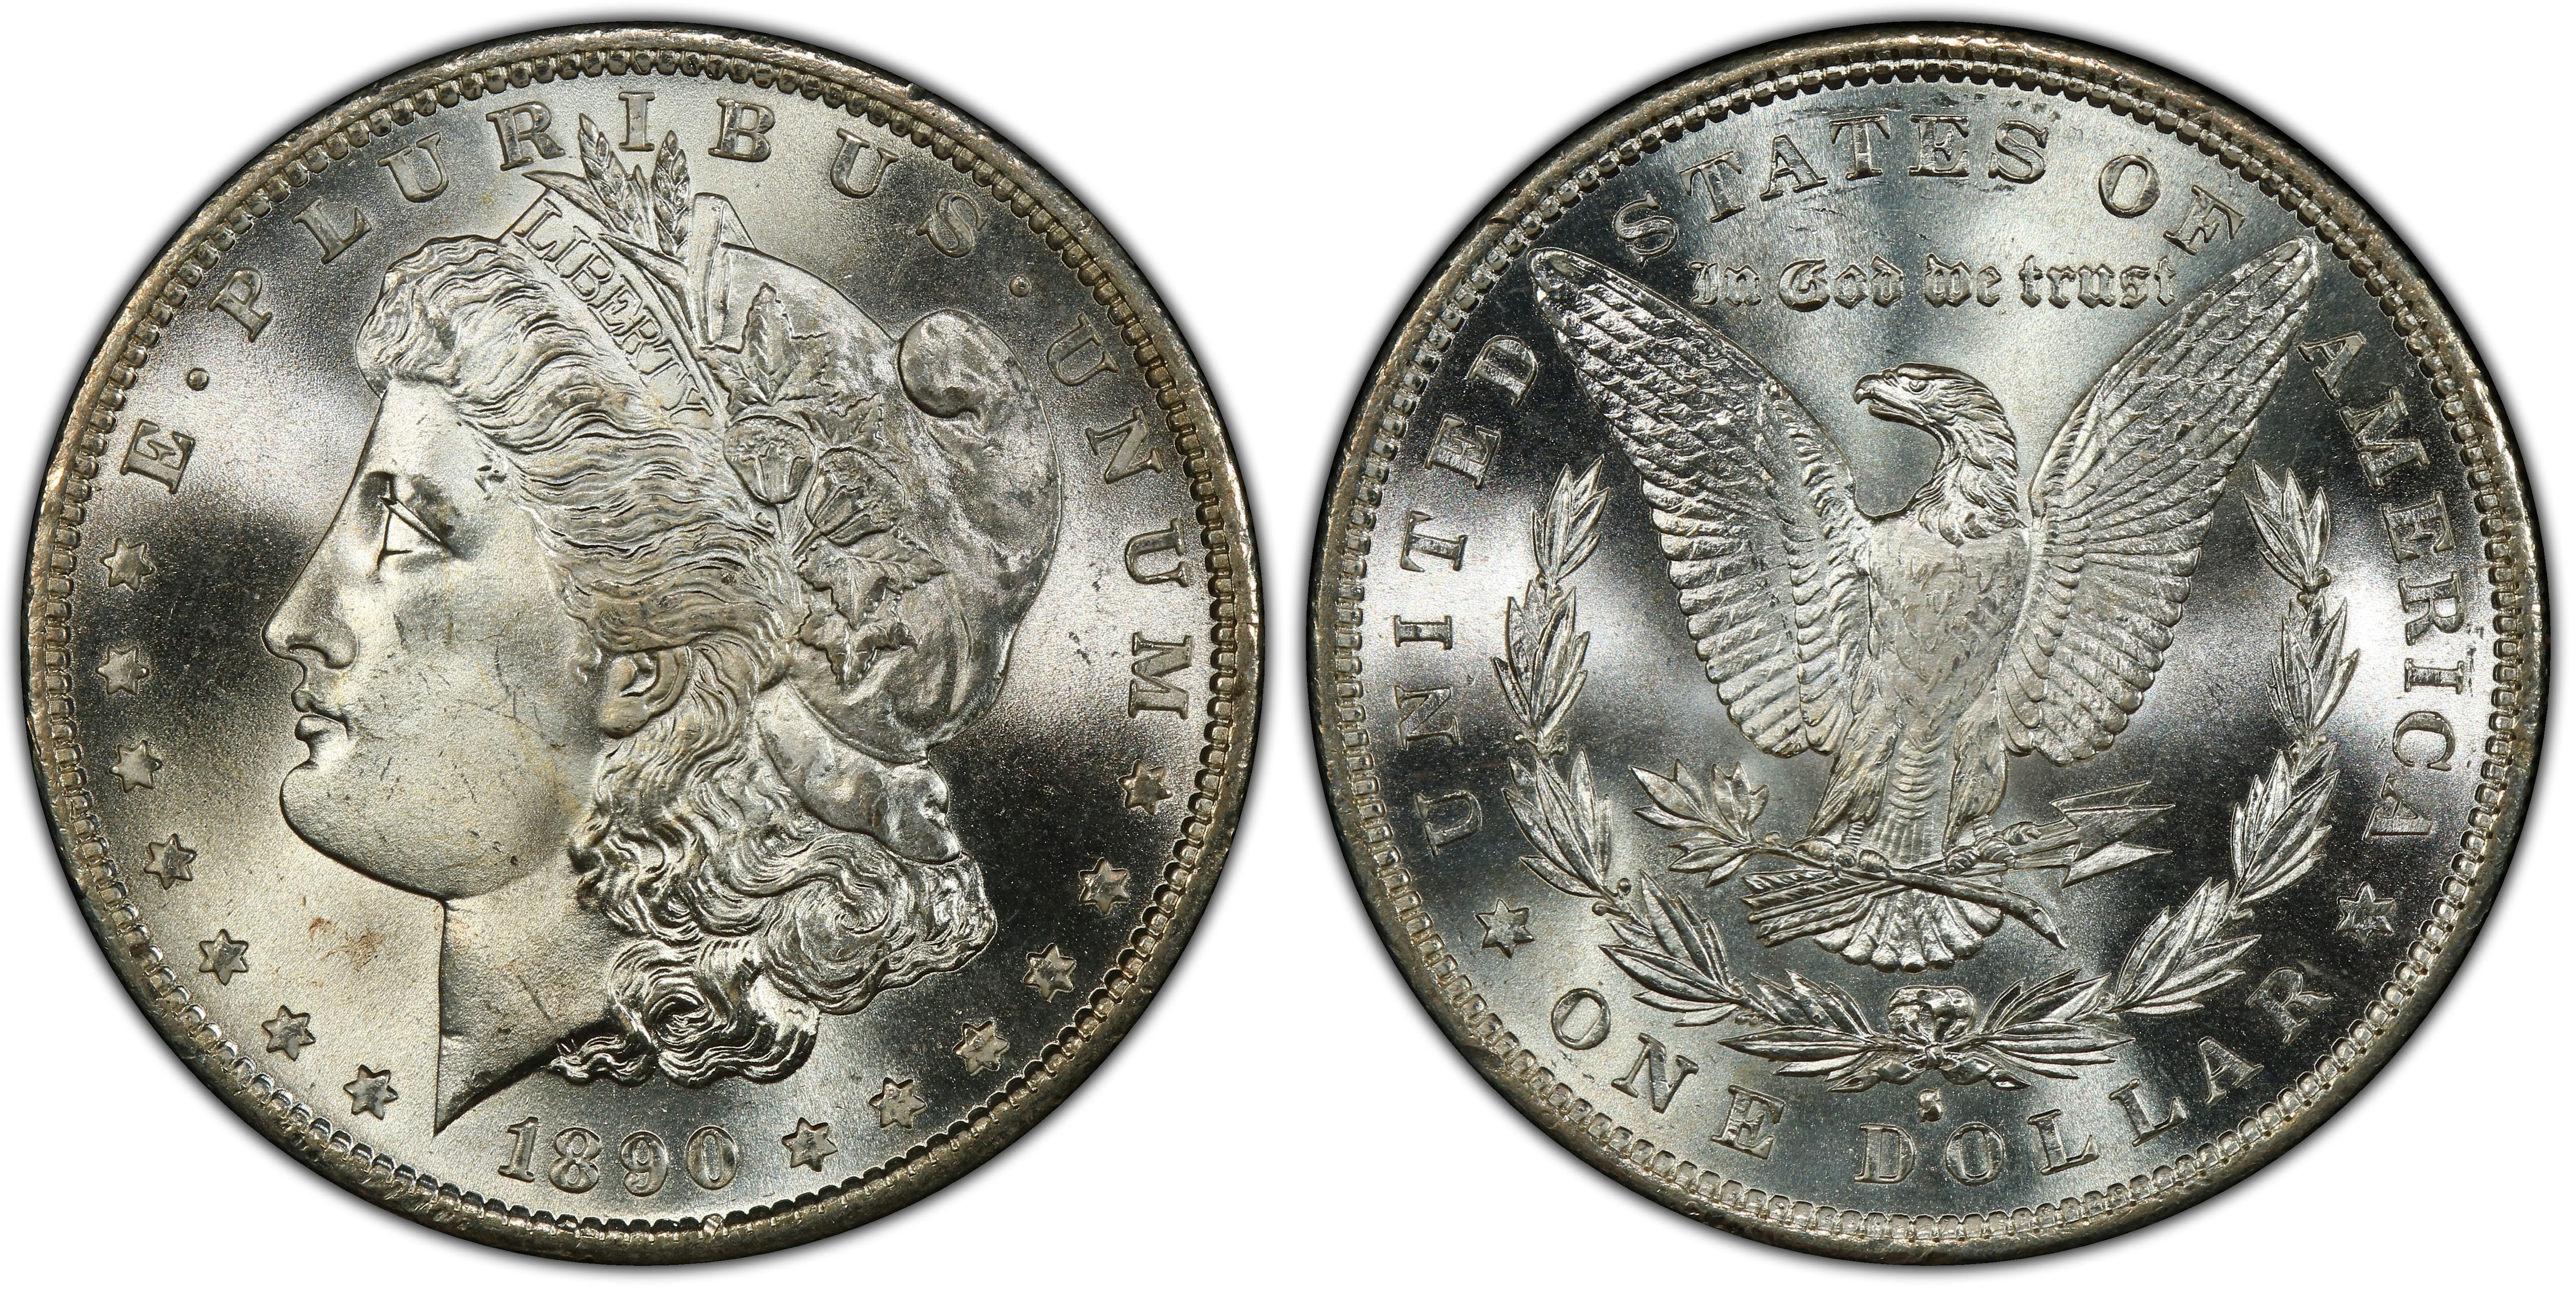 1882 S Morgan Dollar VG Very Good 90% Silver $1 US Coin Collectible 